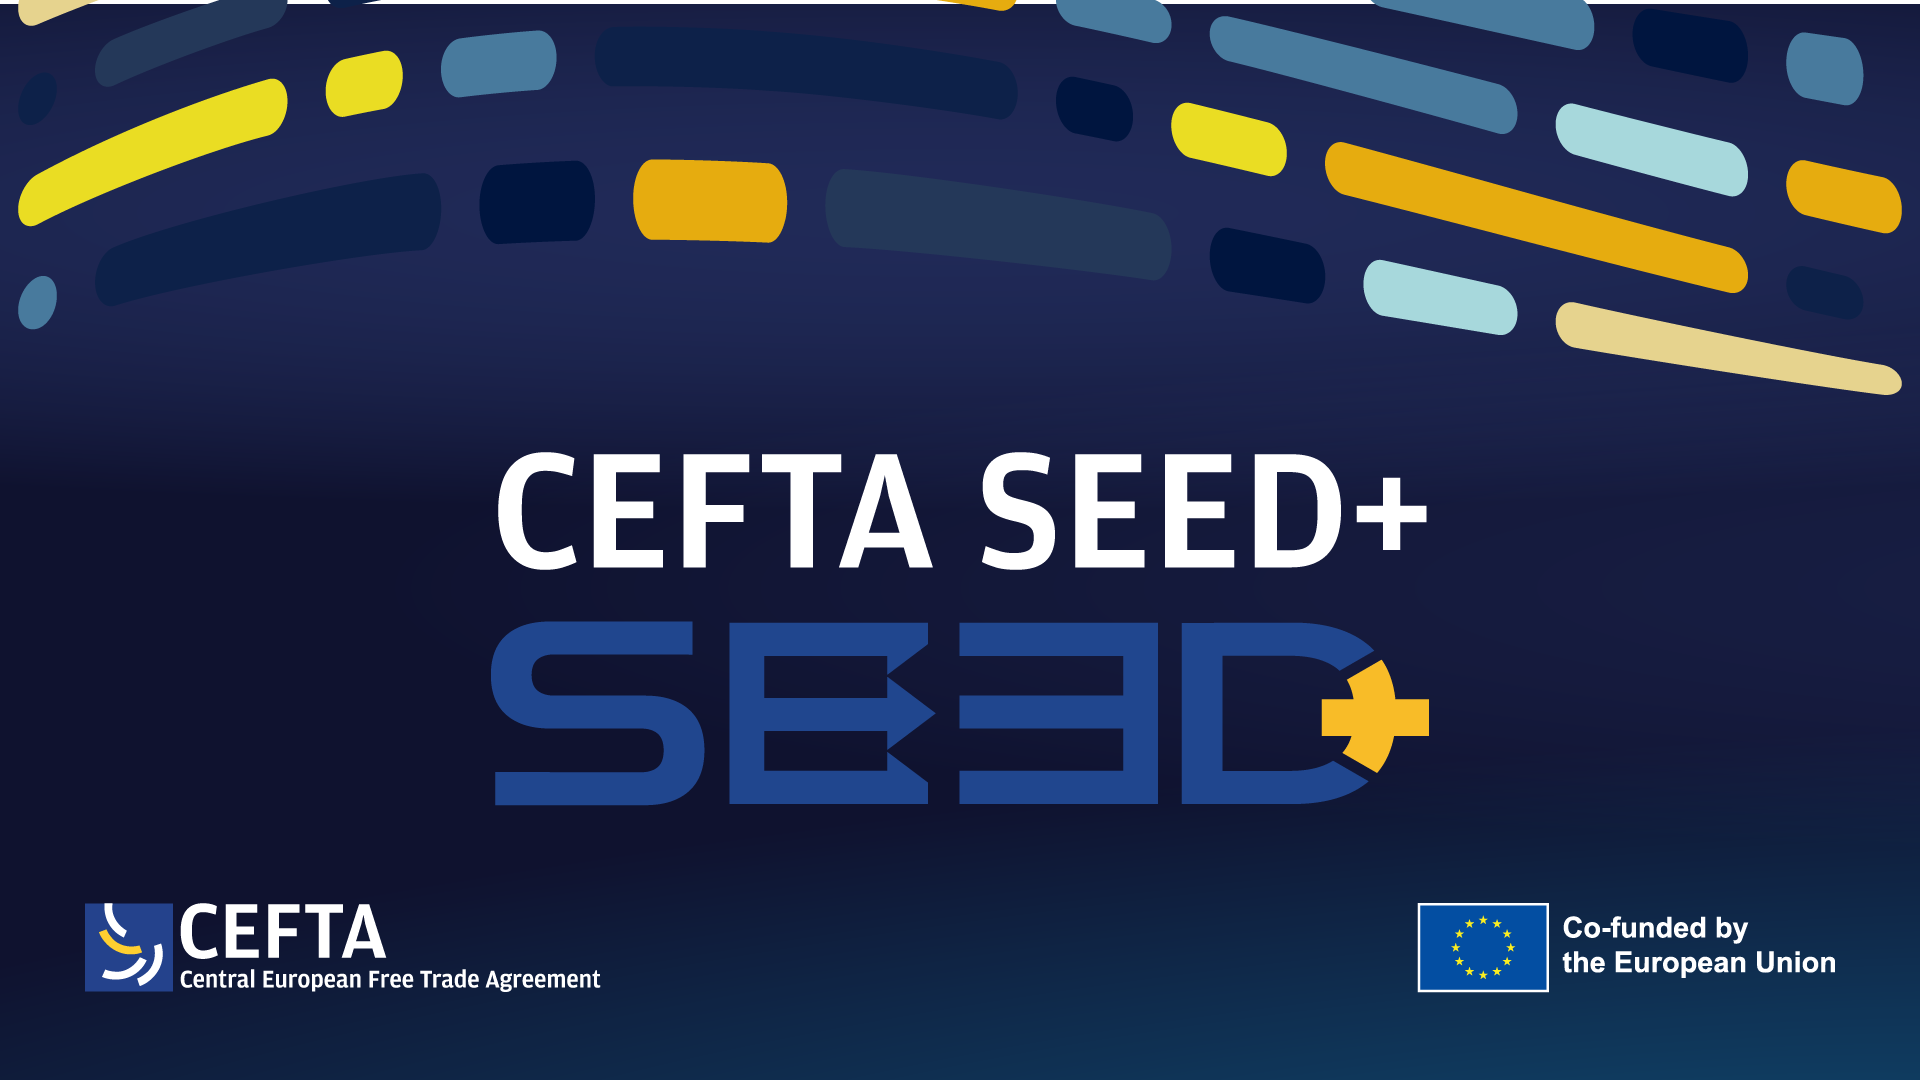 CEFTA SEED+ nastavlja da pruža podršku trgovini kroz digitalizaciju